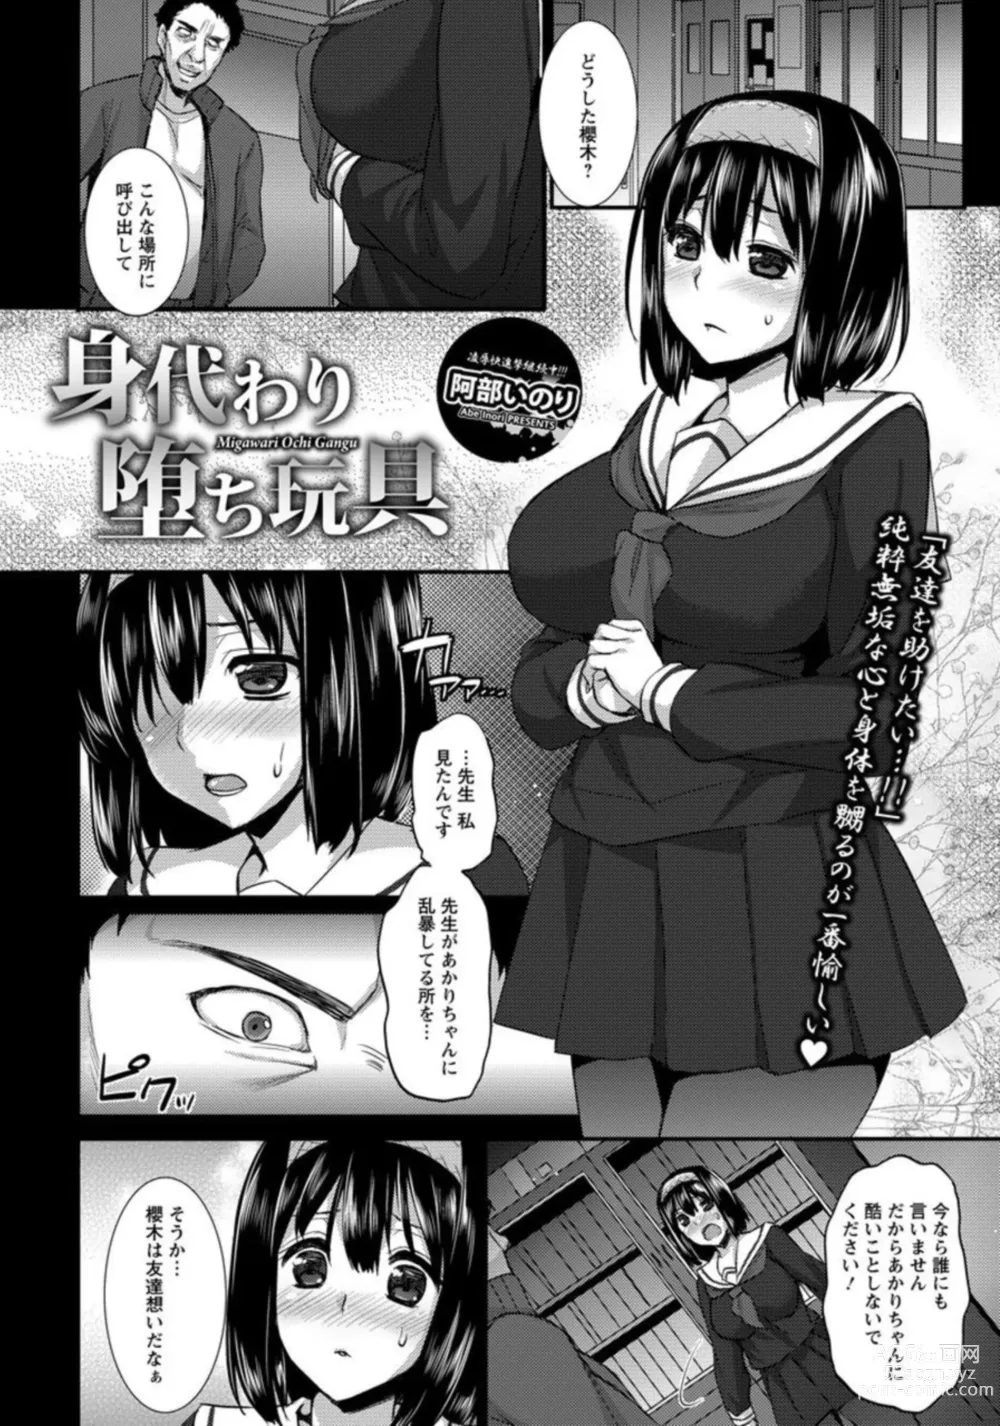 Page 2 of manga Migawari Ochi Gangu